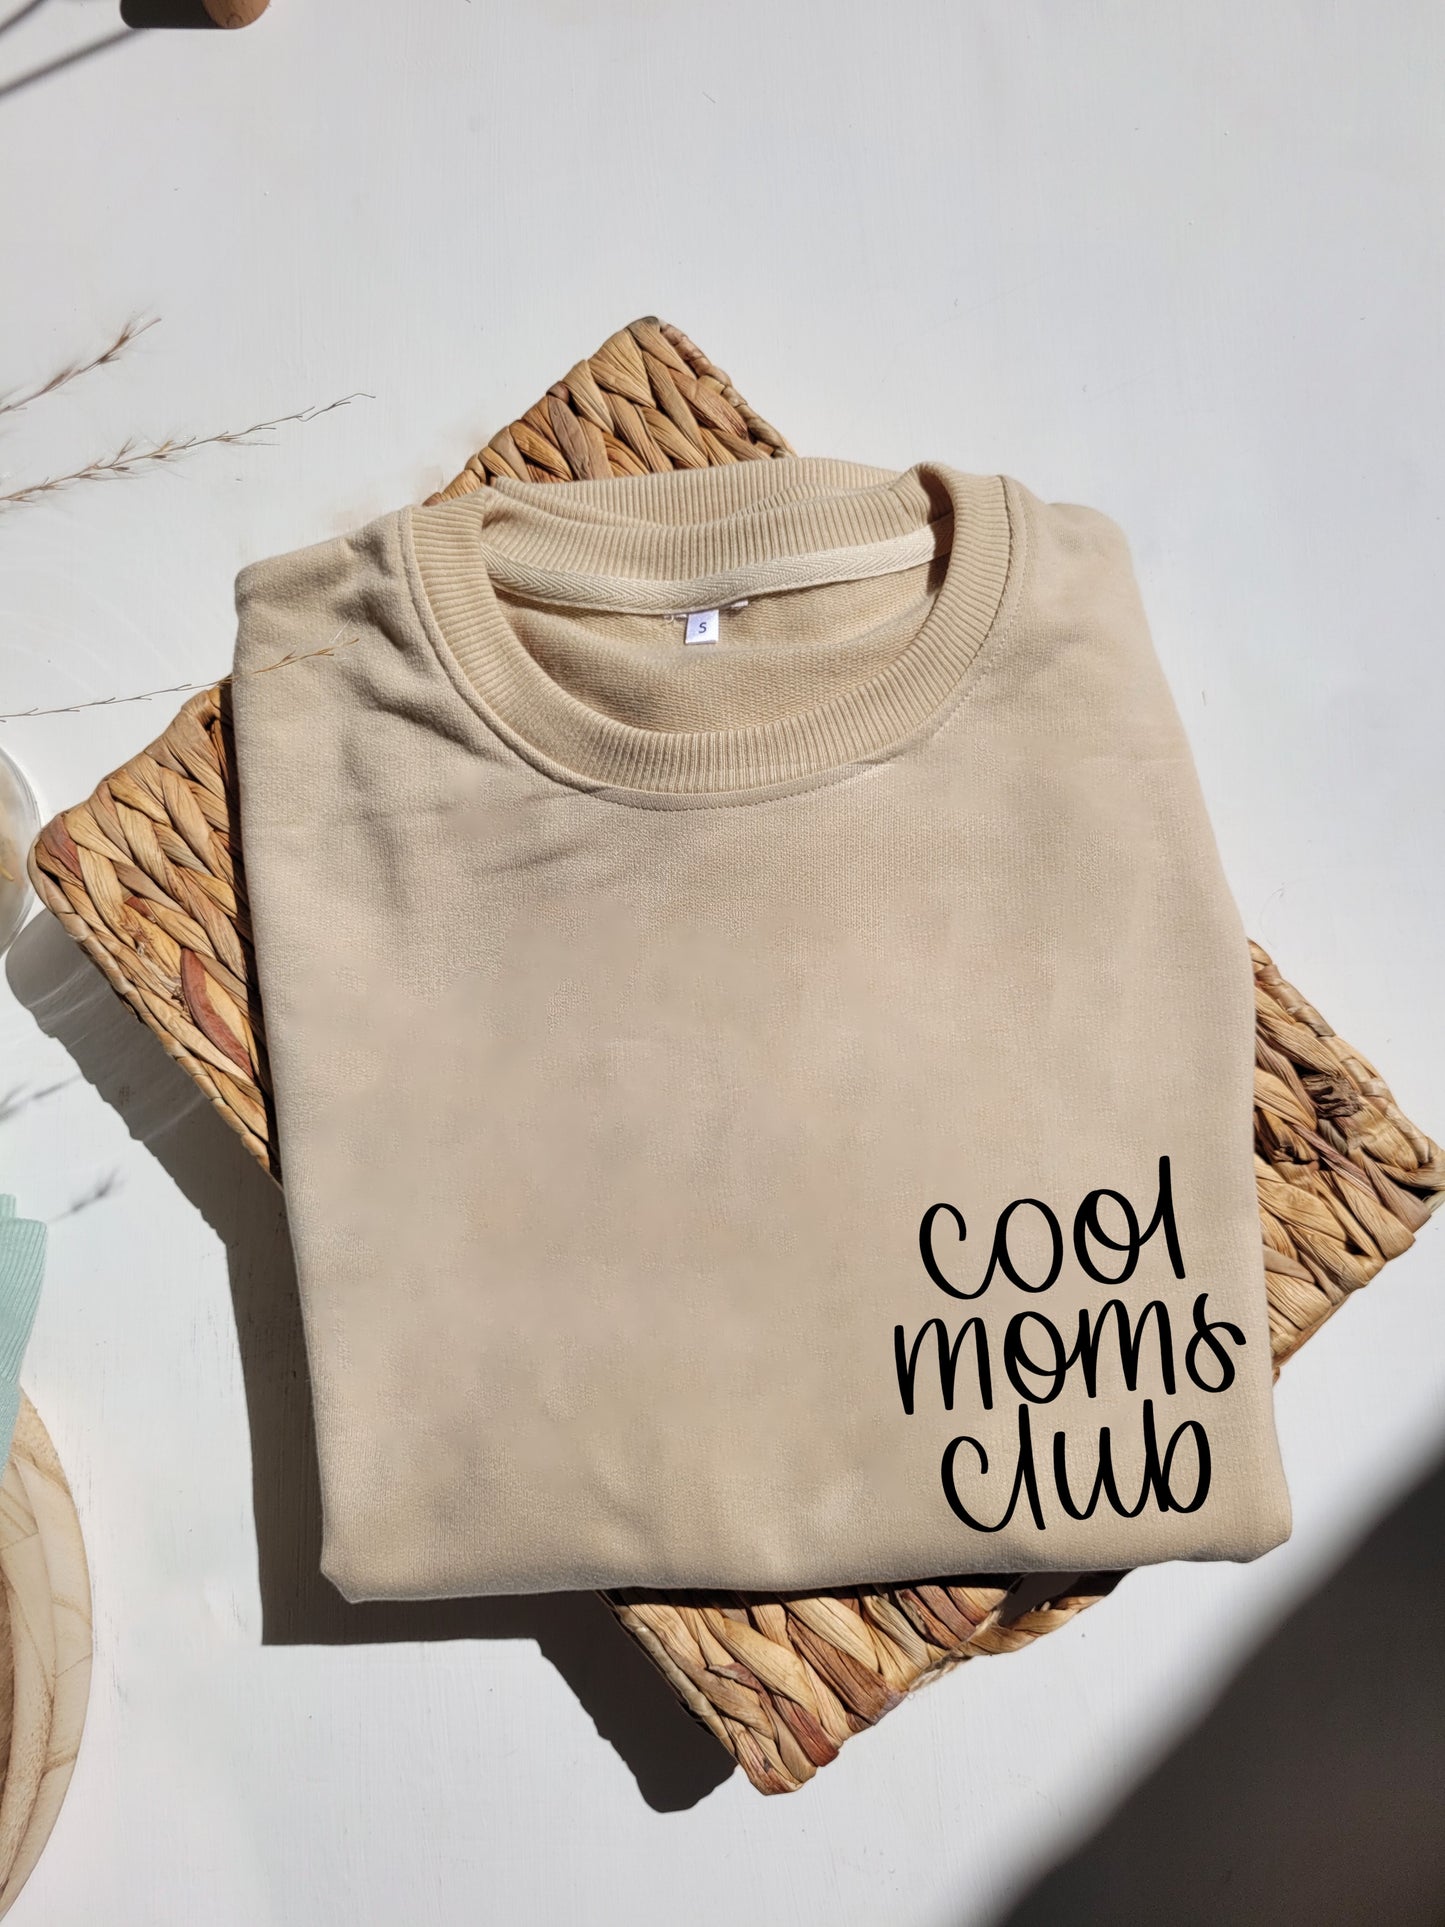 Cool moms club, cool aunts club